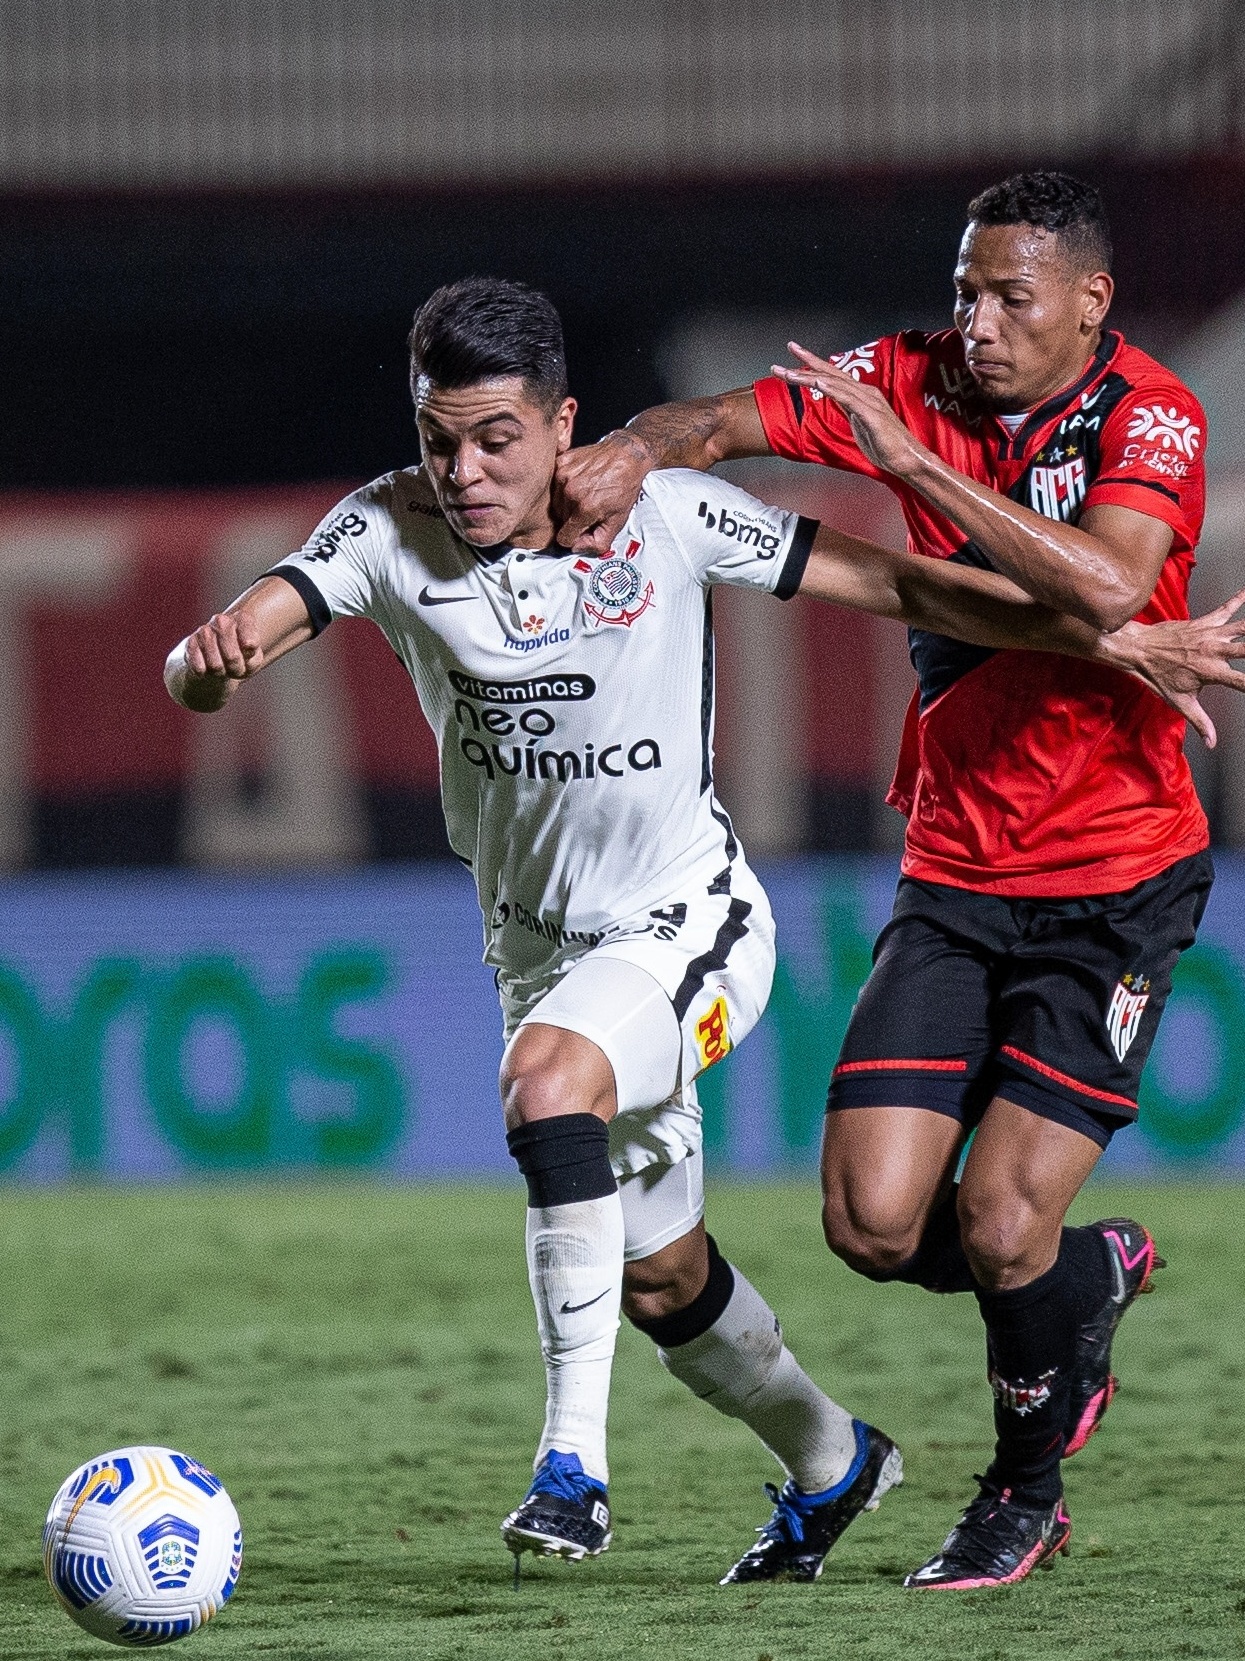 Corinthians perde para Atlético-GO e se complica na Copa do Brasil - Jogada  - Diário do Nordeste